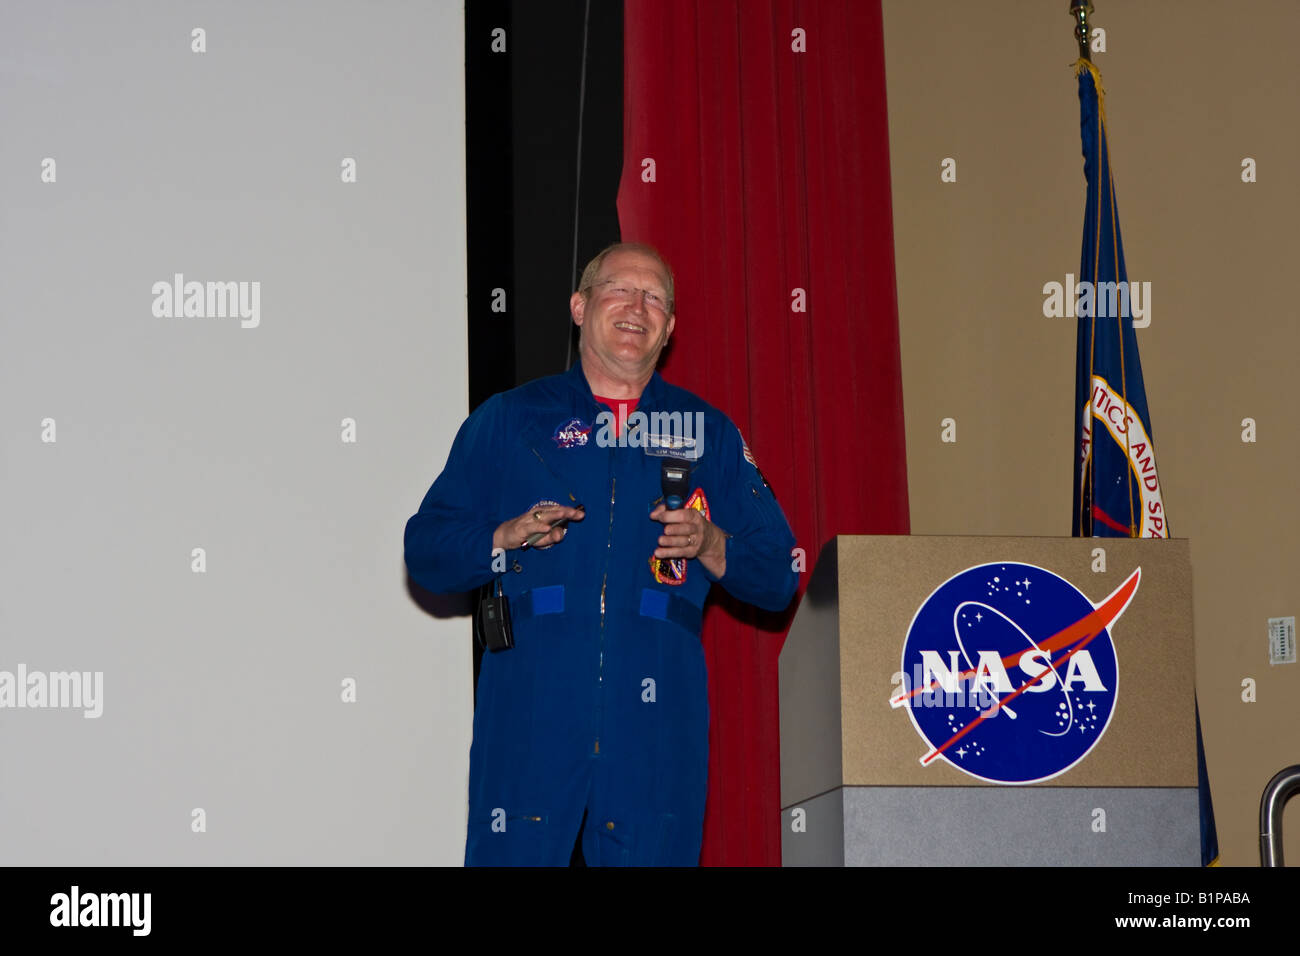 NASA Space Shuttle astronauta, Lt, Colonnello Charles Donald 'Sam' Gemar, presso la John F Kennedy Space Center di Cape Canaveral Florida Foto Stock